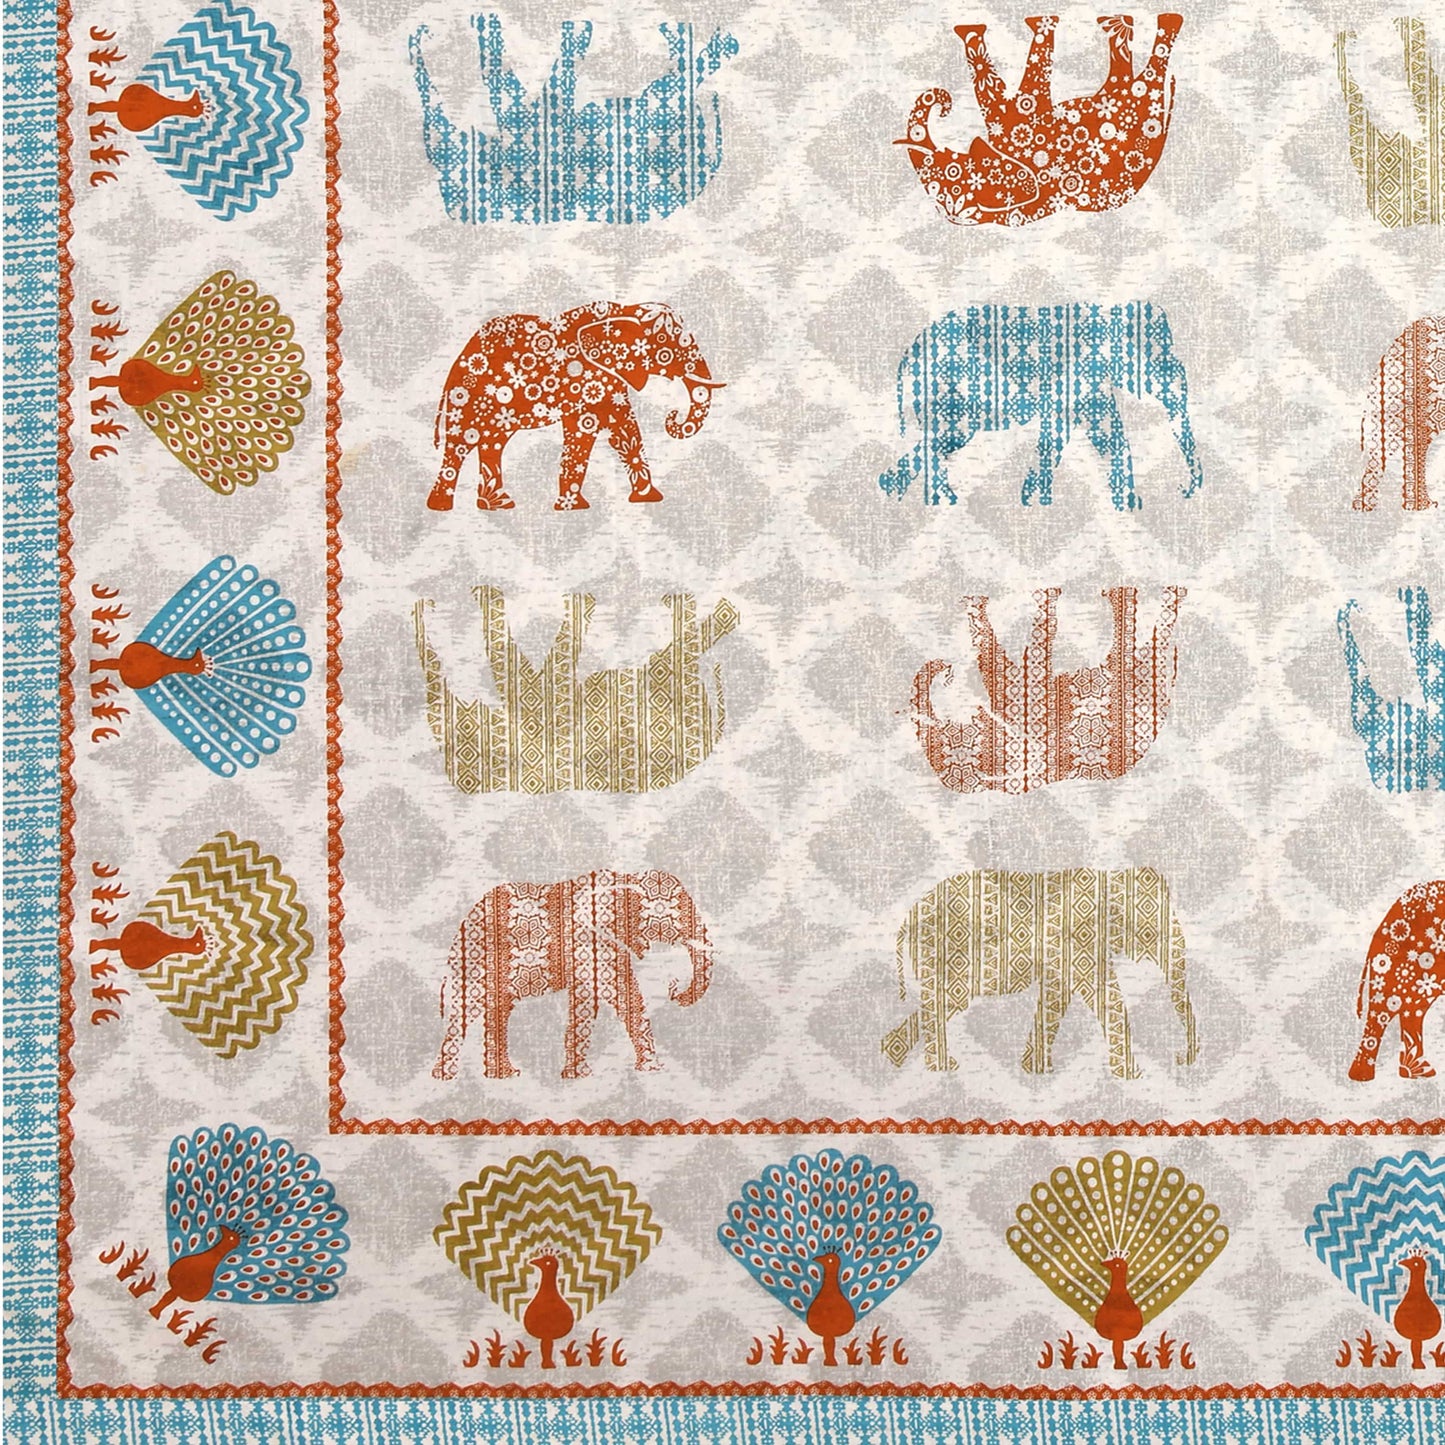 Ethnic Elephant Jaipuri Bedsheet Double Bed (90x108 inch)